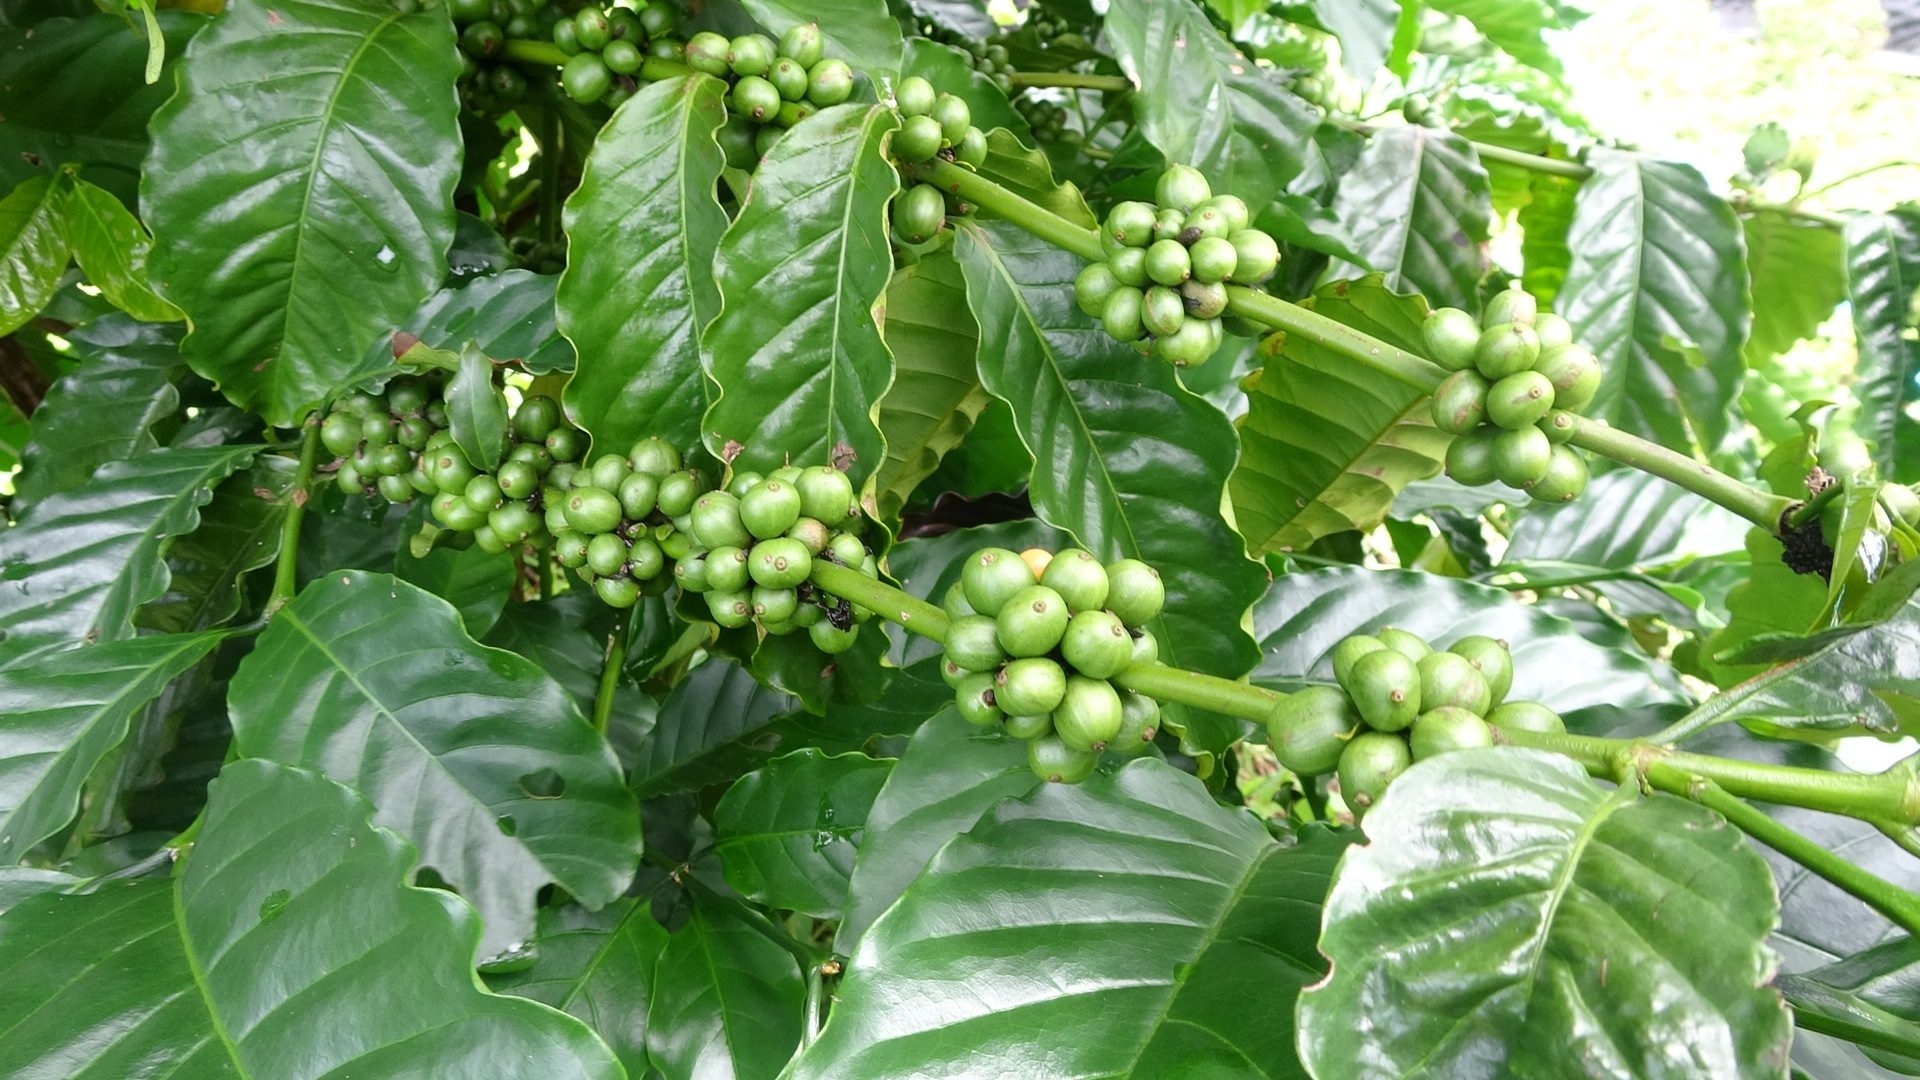 โค่นสวนยางปลูกกาแฟ พลิกชีวิต-ผุดรายได้เกษตรสตูล ปลุกตำนาน 'กาแฟ' โบราณ200ปี